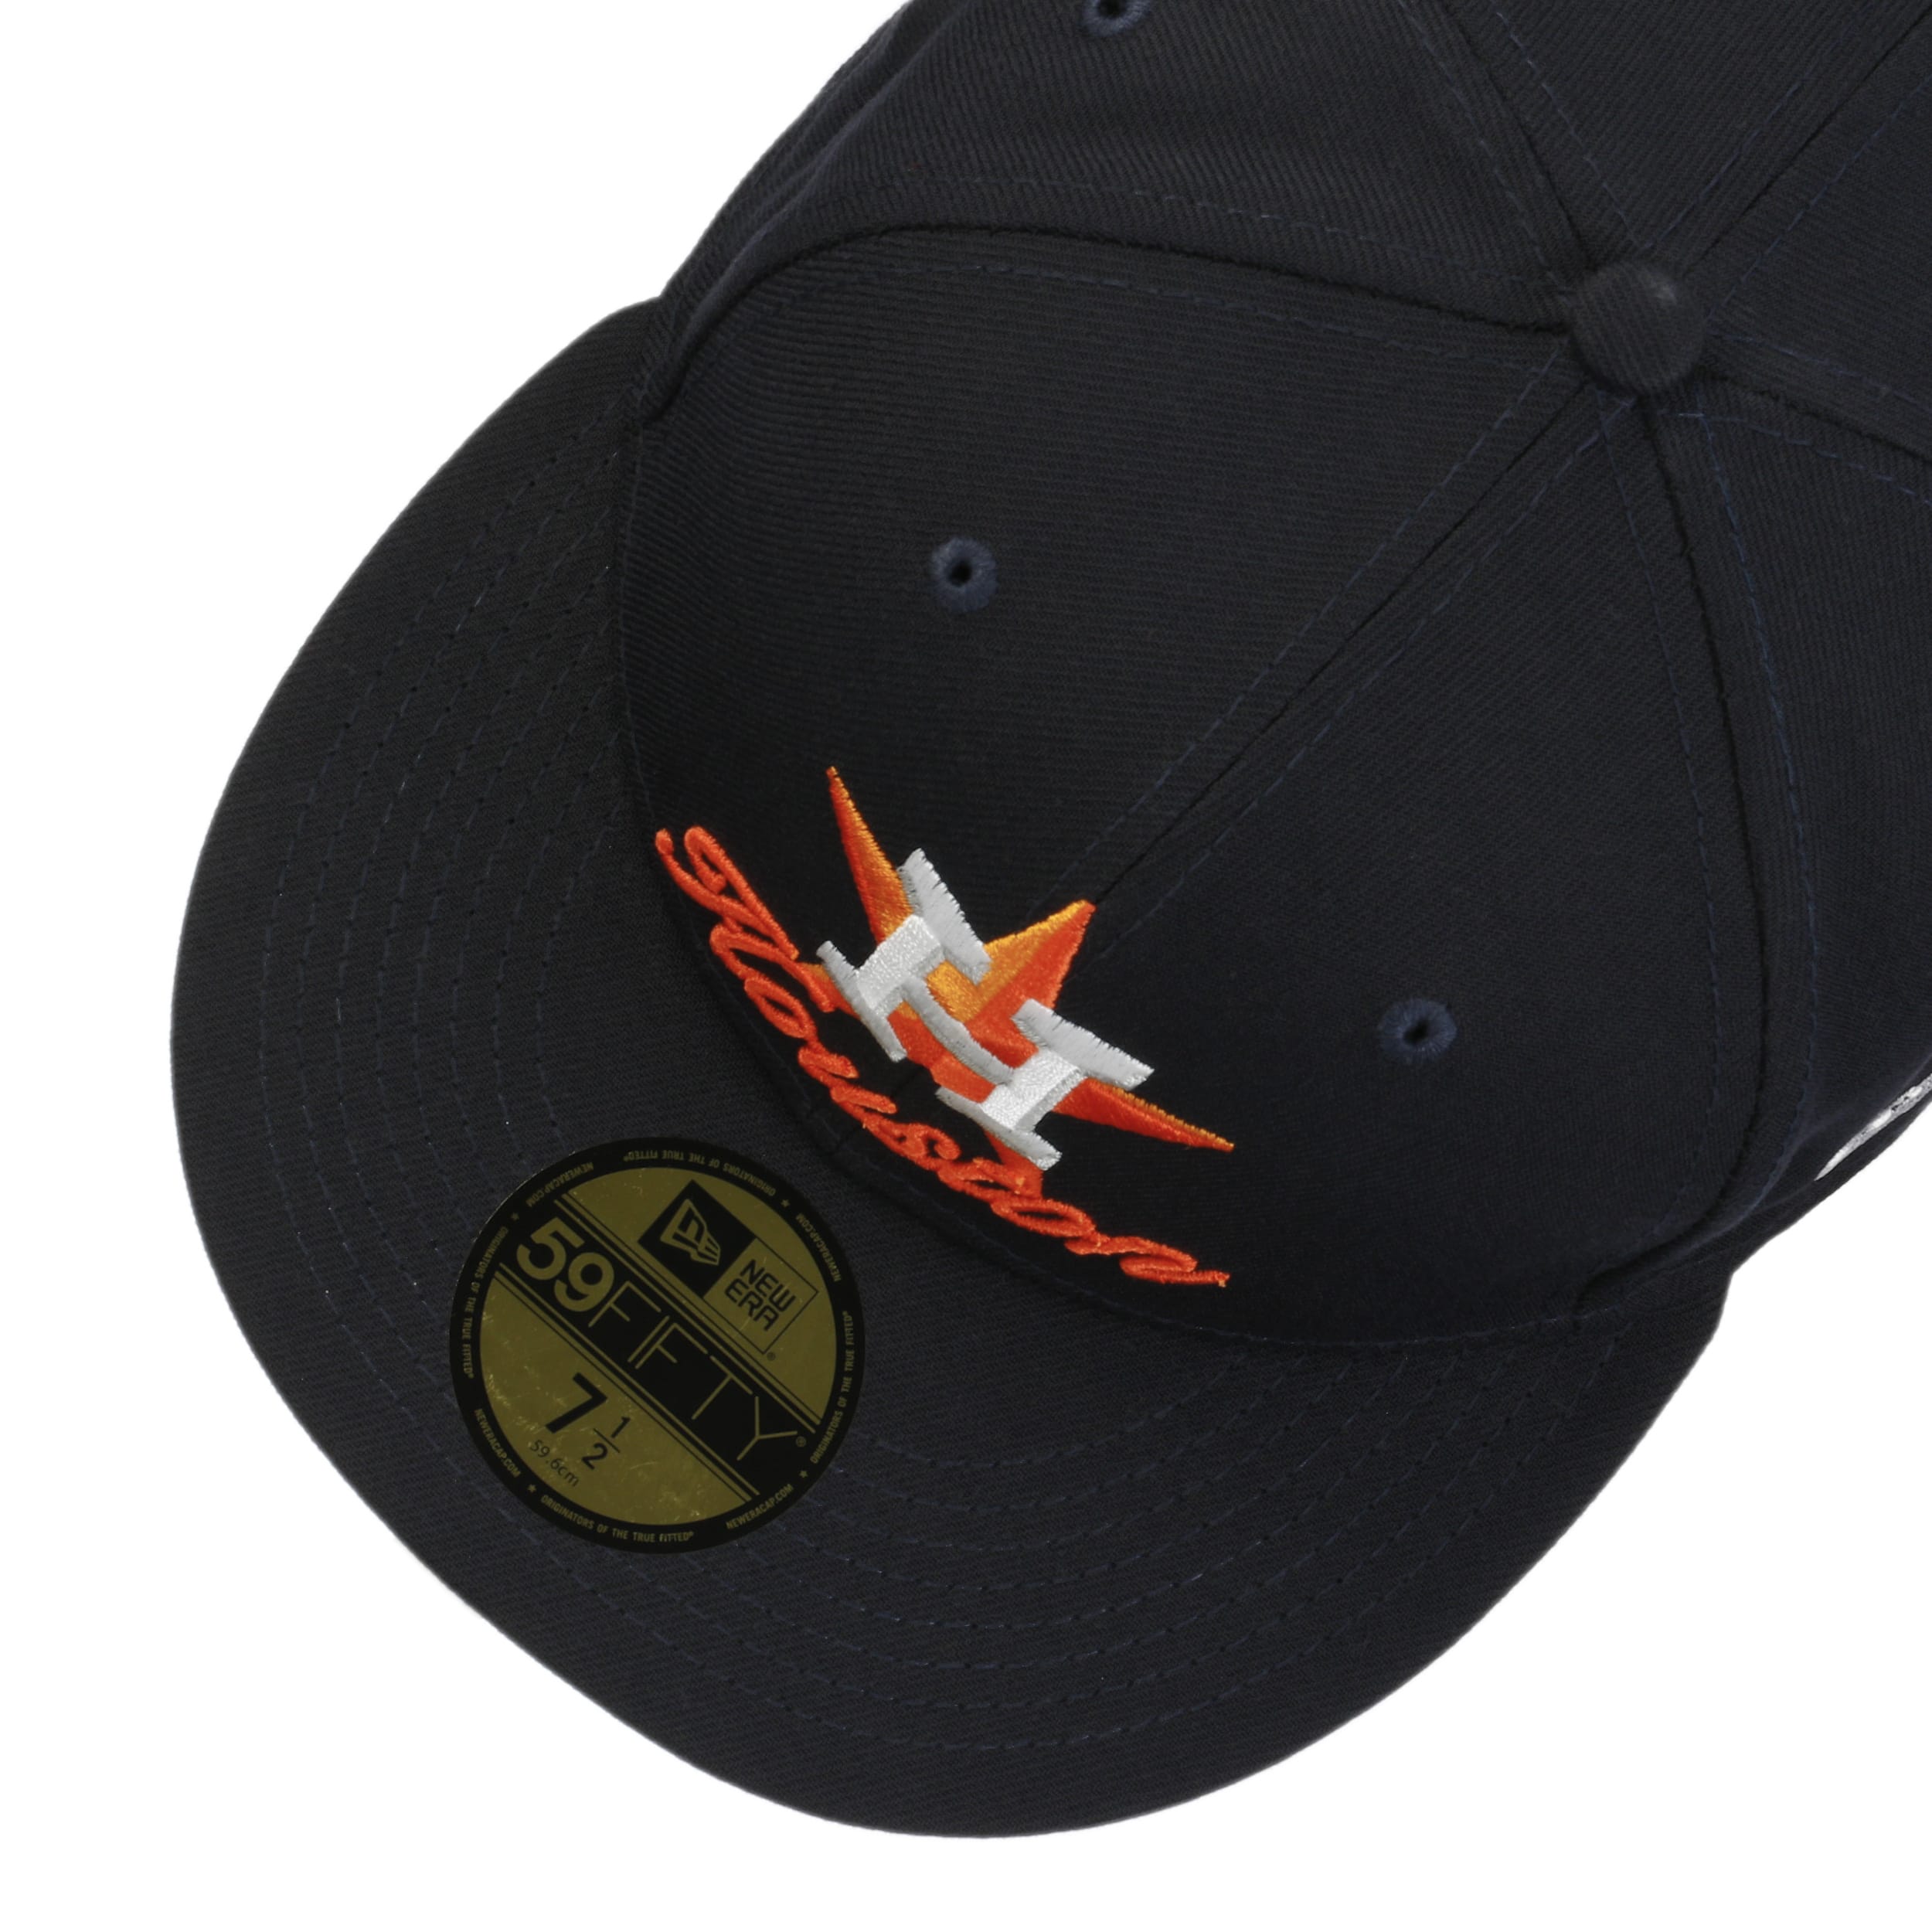 New Era Houston Astros MLB 9FIFTY Snapback Hat